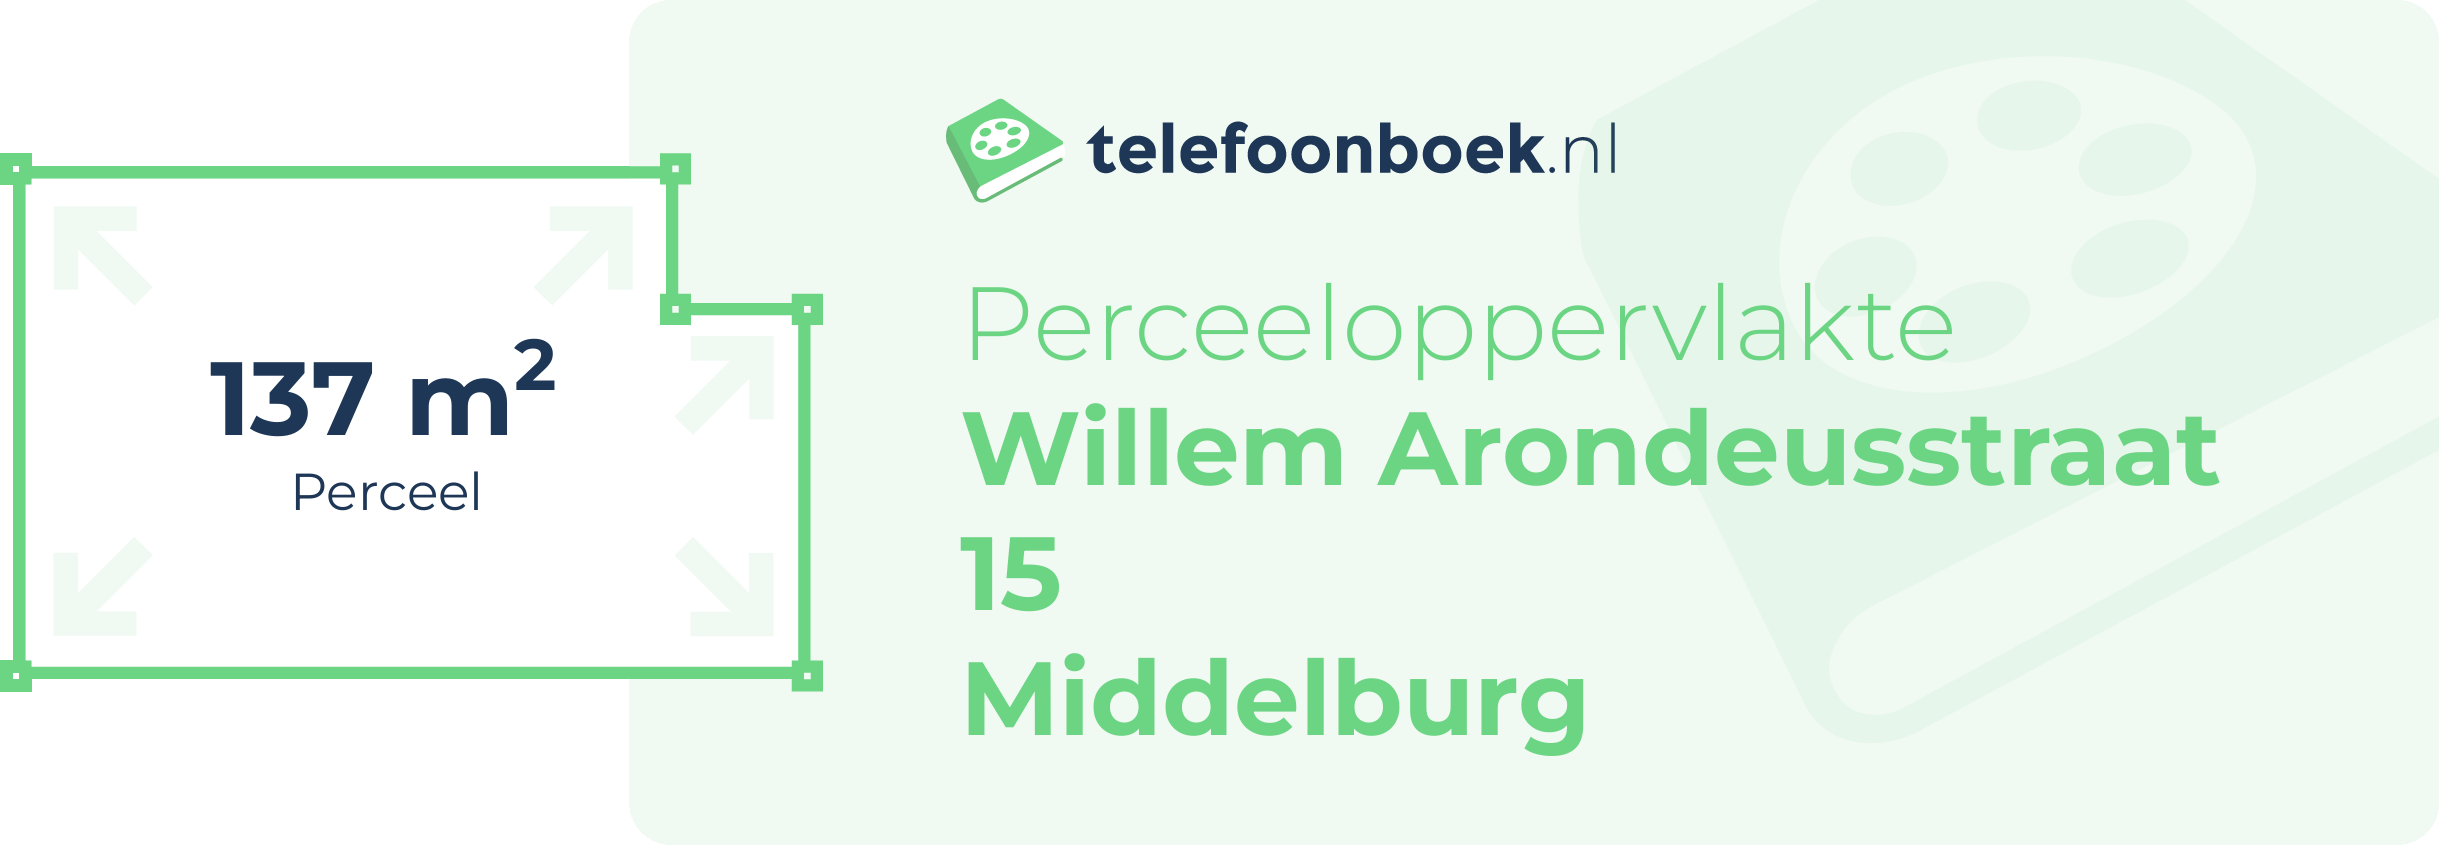 Perceeloppervlakte Willem Arondeusstraat 15 Middelburg